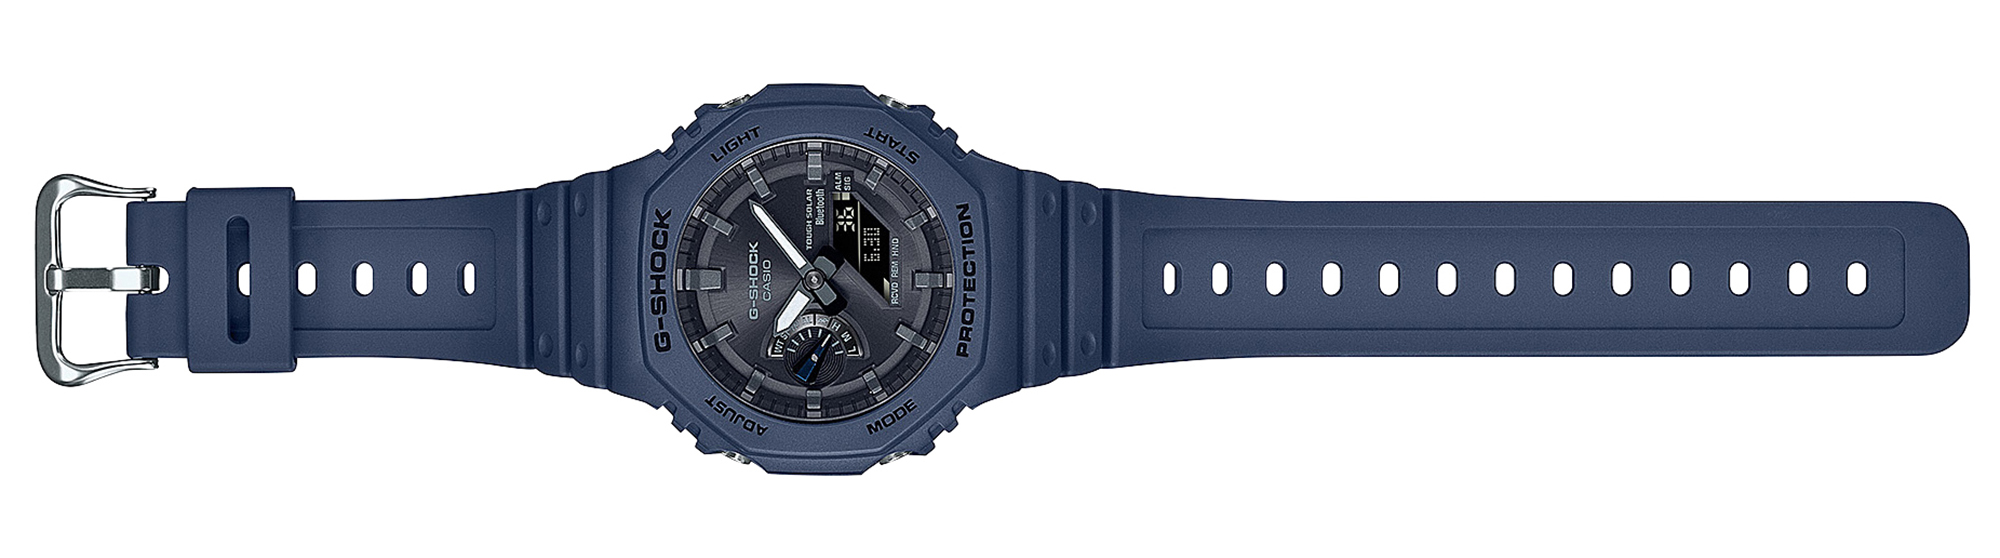 | Casio GA-B2100 G-Shock Series Watch aBlogtoWatch Debuts